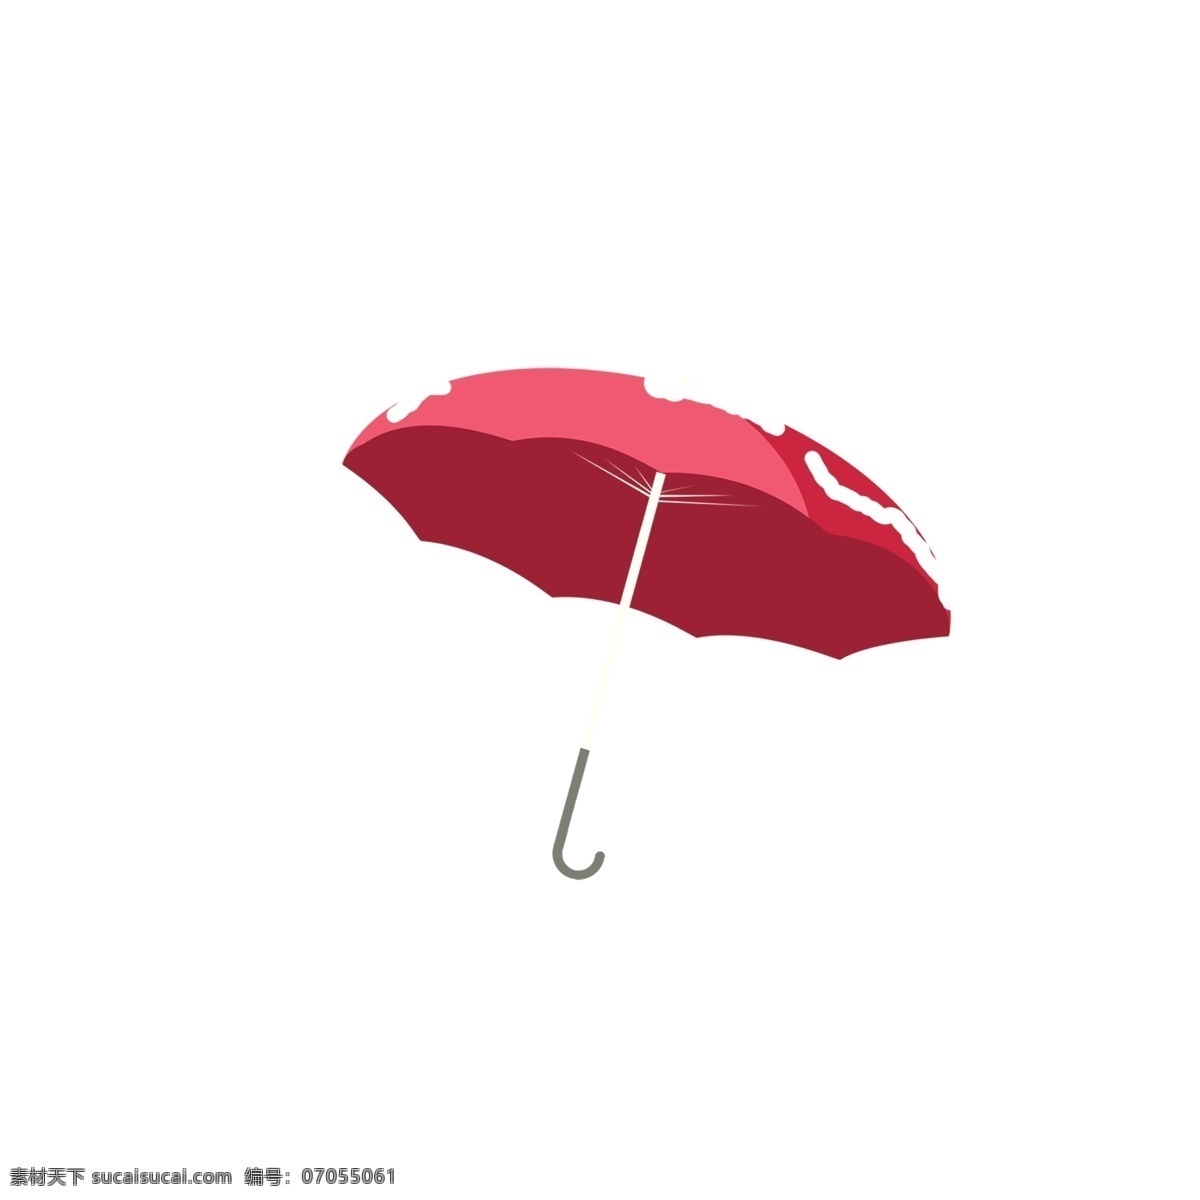 雪花 覆盖 红色 小 伞 简约 卡通 冬季 雨具 小伞 雪